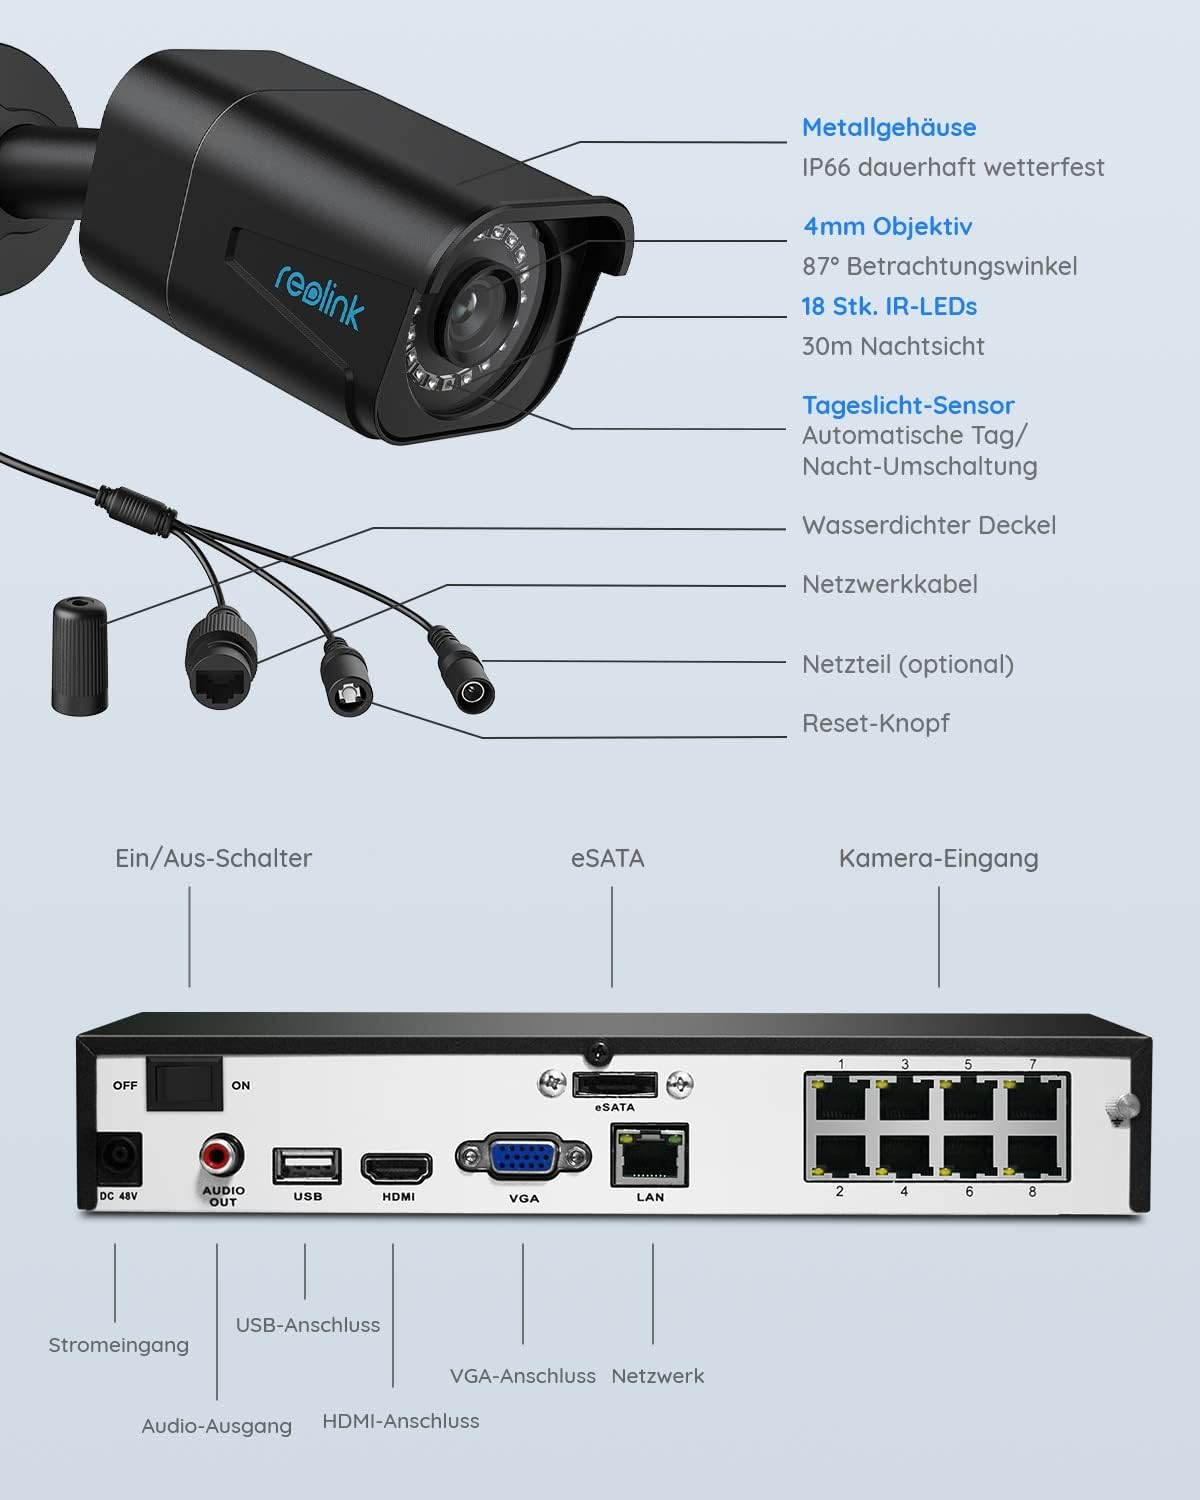 Reolink 8-Kanal-Kit 4K-Überwachungskamerasystem mit 4 PoE-IP-Kameras, 2 TB HDD NVR, Personen- und Fahrzeugerkennung, IP66 wetterfest, RLK8-800B4-A